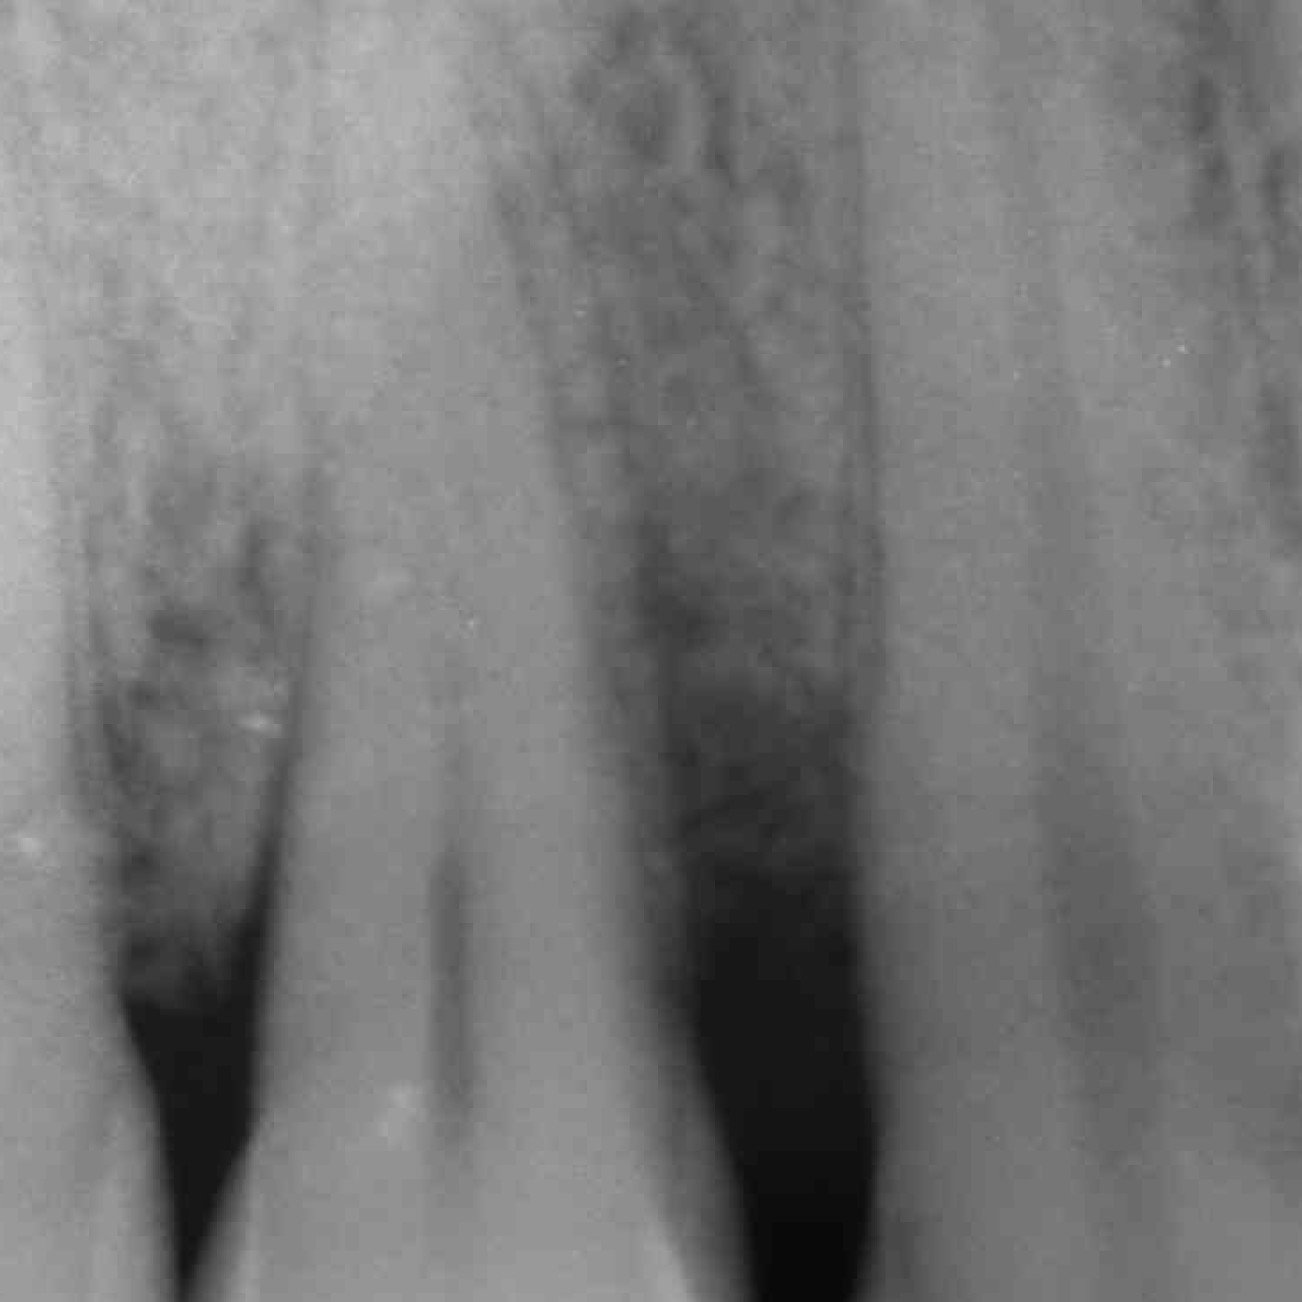 Cas dentaire du Professeur Andrea PIlloni montrant la radiologie d'un défaut infrabonique profond